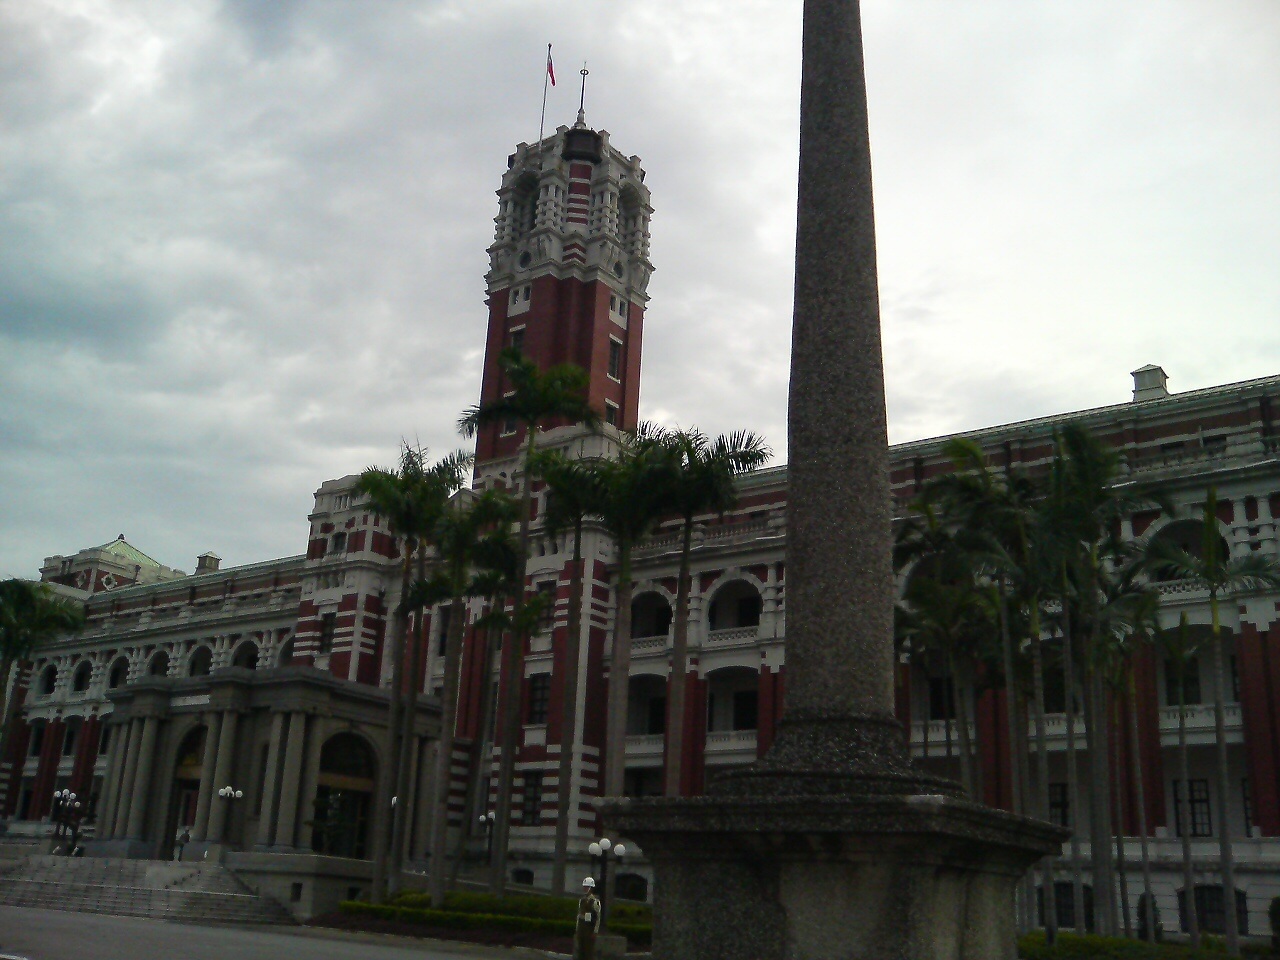 台湾総督府